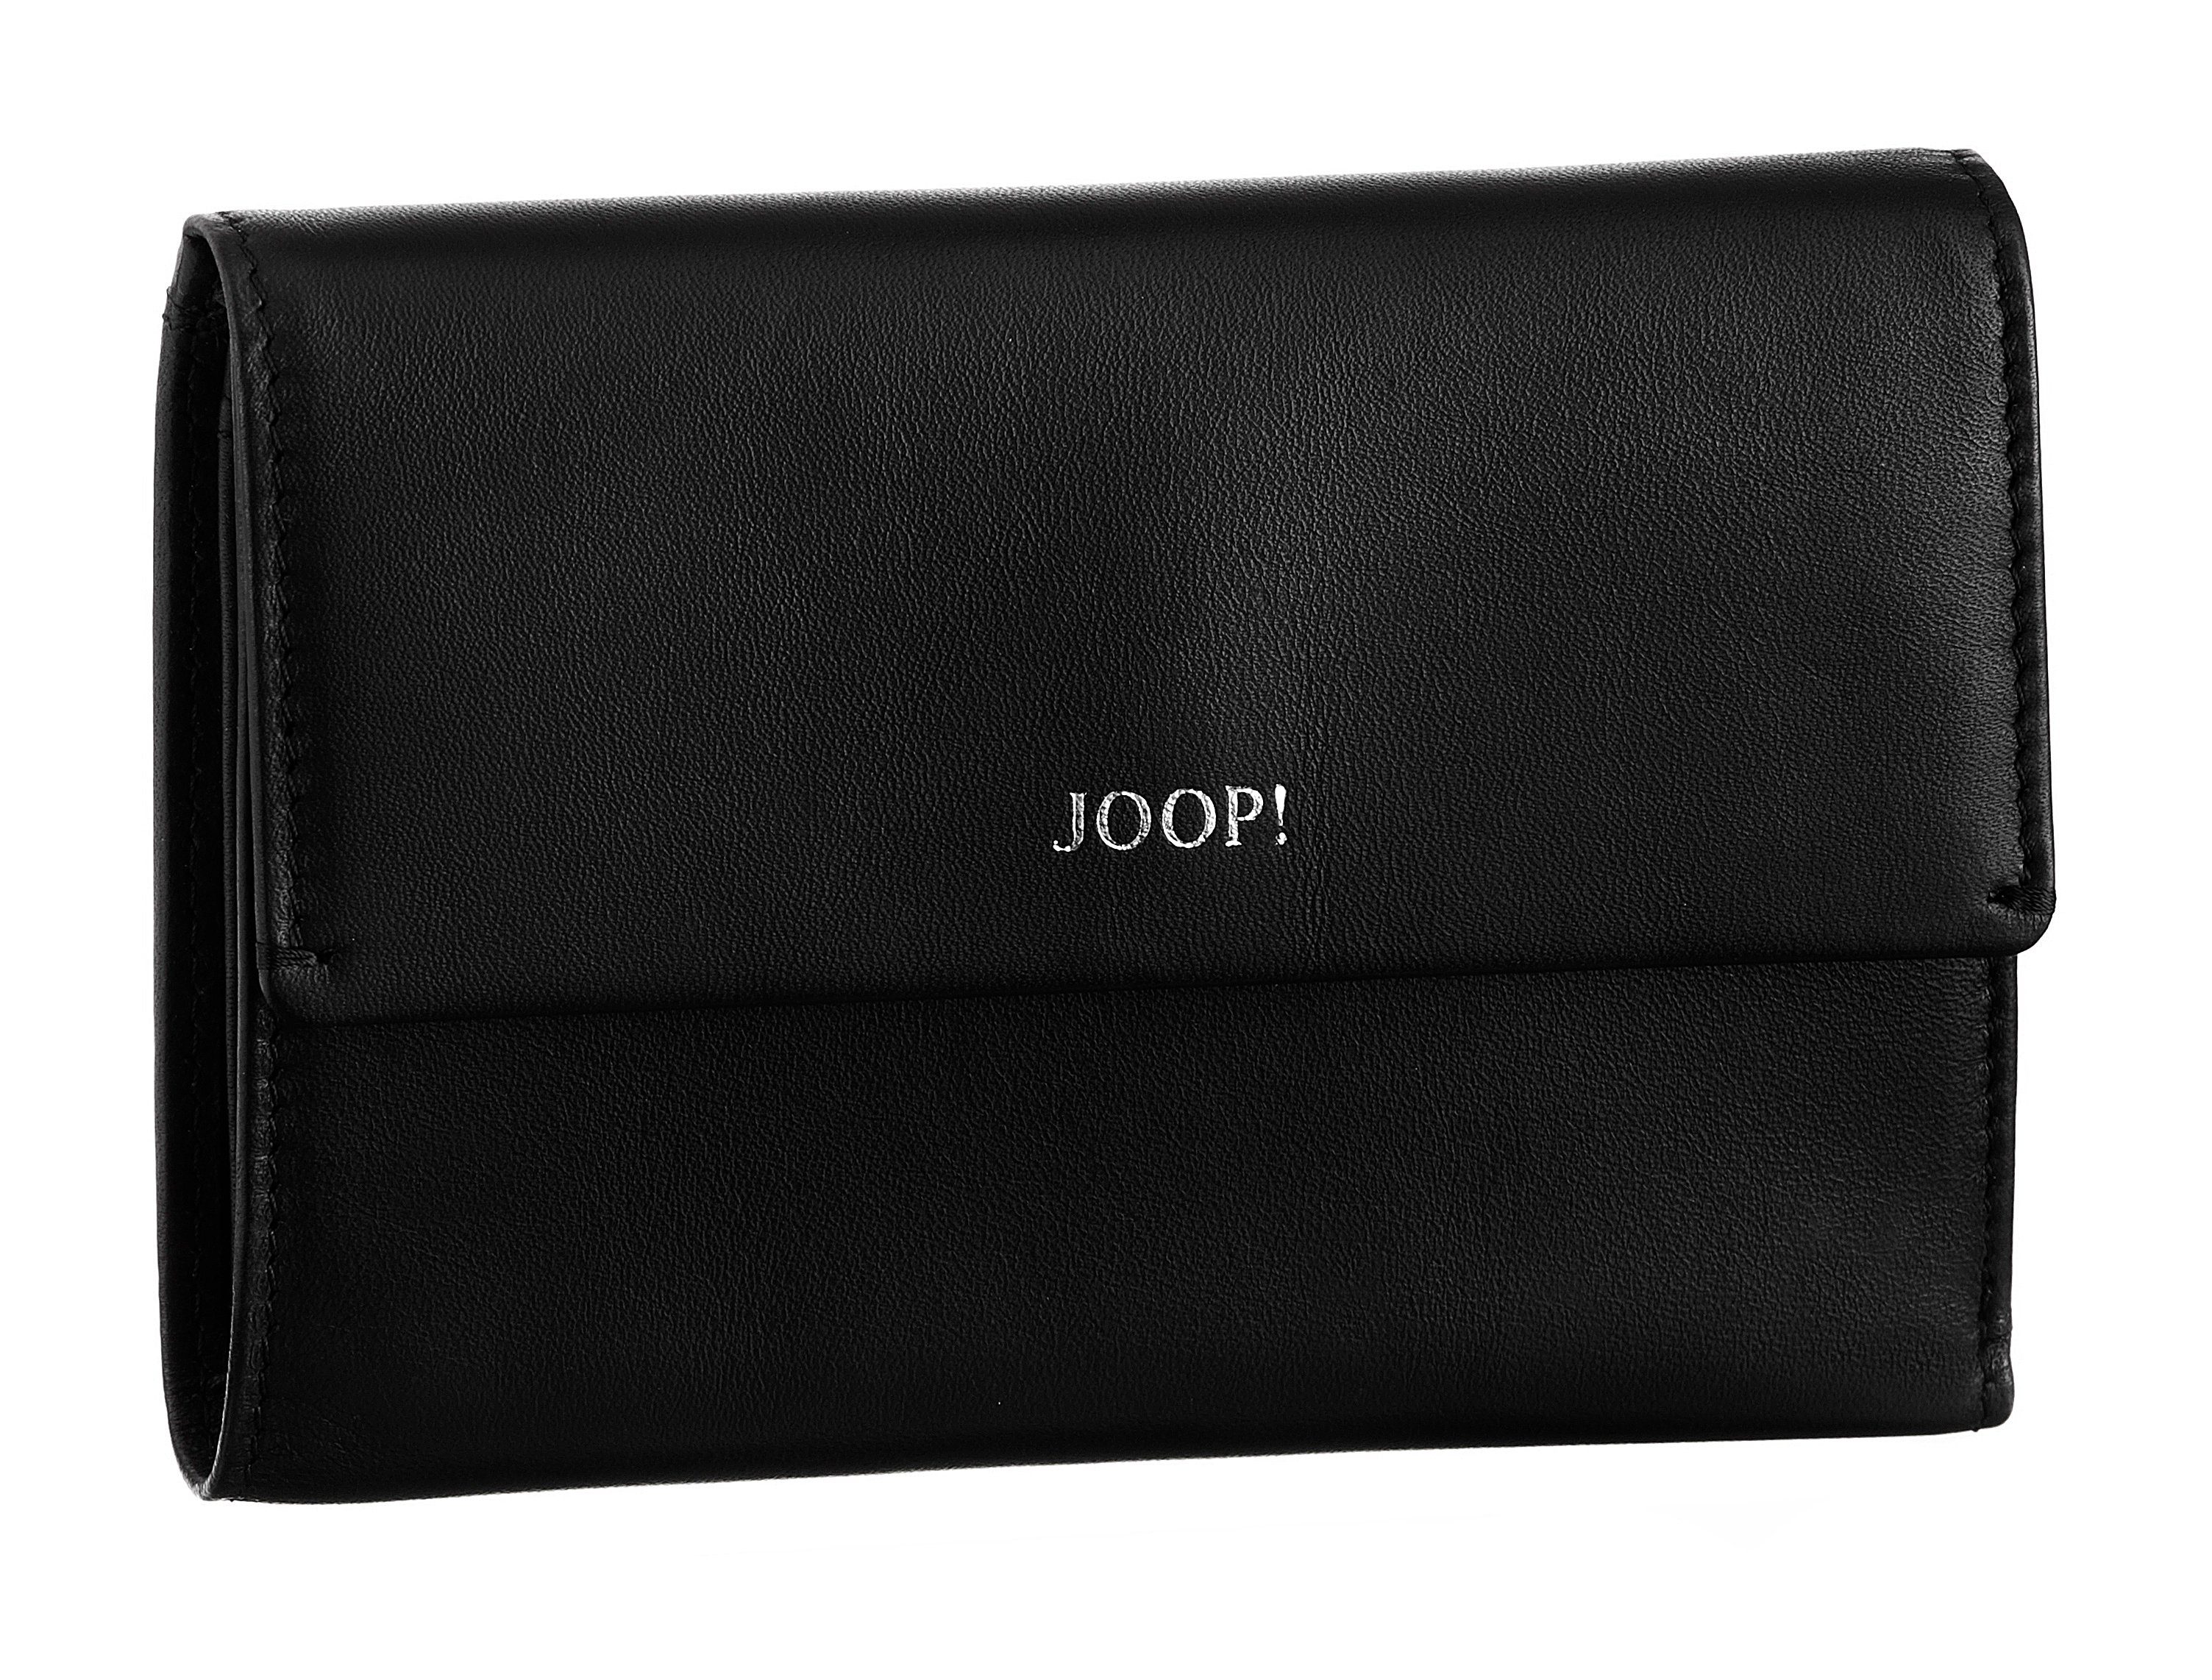 Joop! Geldbörse sofisticato 1.0 cosma purse mh10f, in schlichtem Design black | Geldbörsen